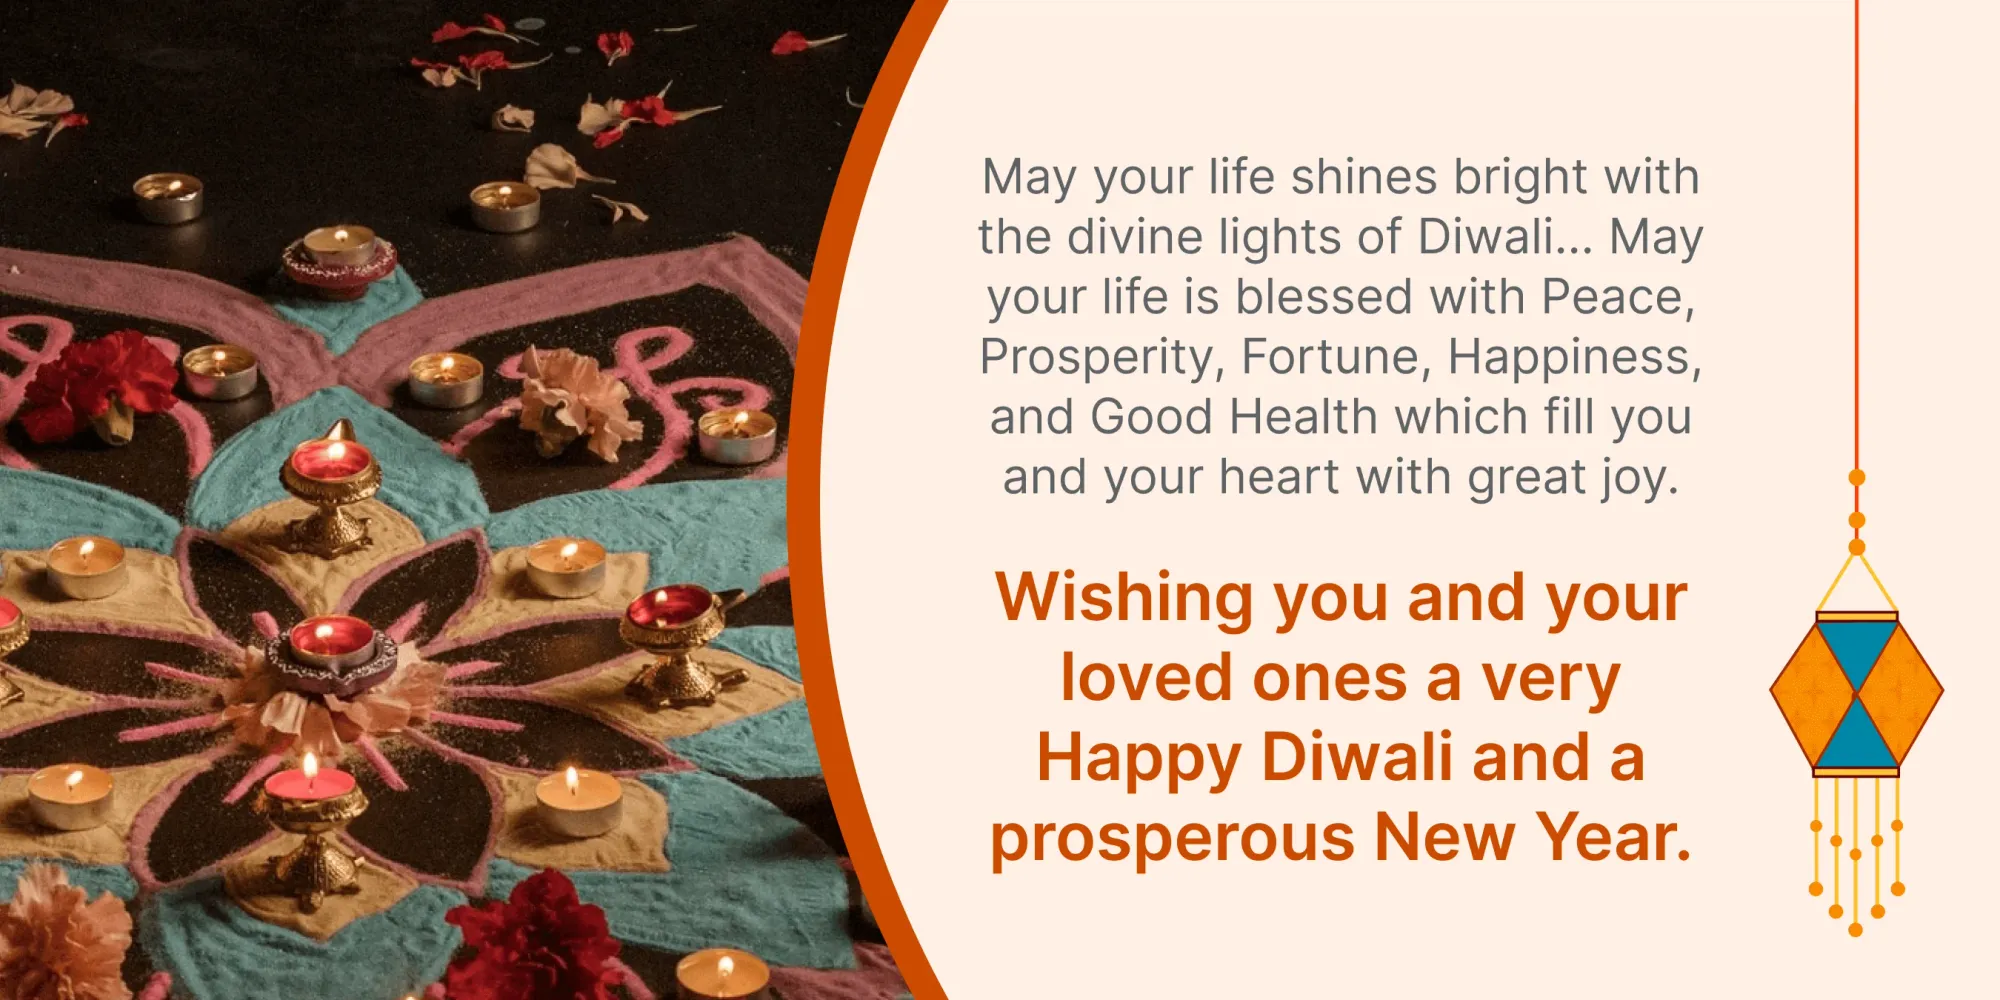 Diwali en nieuwjaarswensen voor klanten